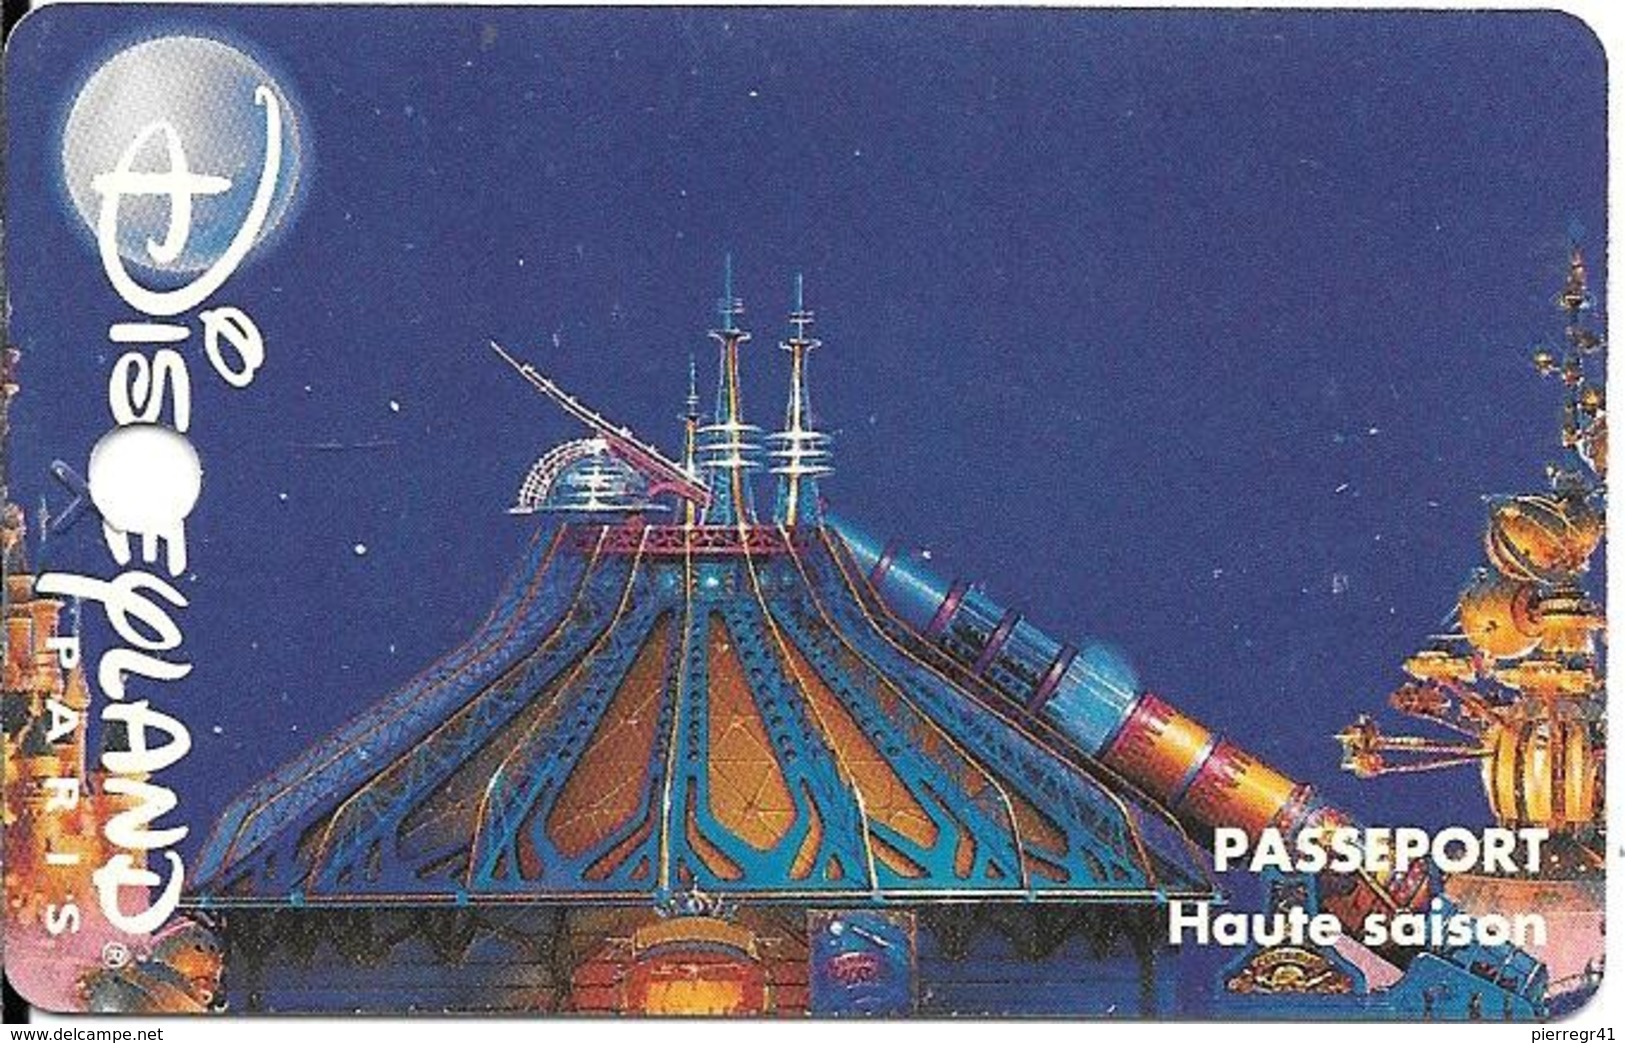 PASS-DISNEYLANDPARIS -1996-SPACE MOUNTAIN-ADULTE-V° N° S 049610- HorIZ En HAUT-MKP-Gratuit Employé ID Apres 14H-TBE-Trou - Disney-Pässe